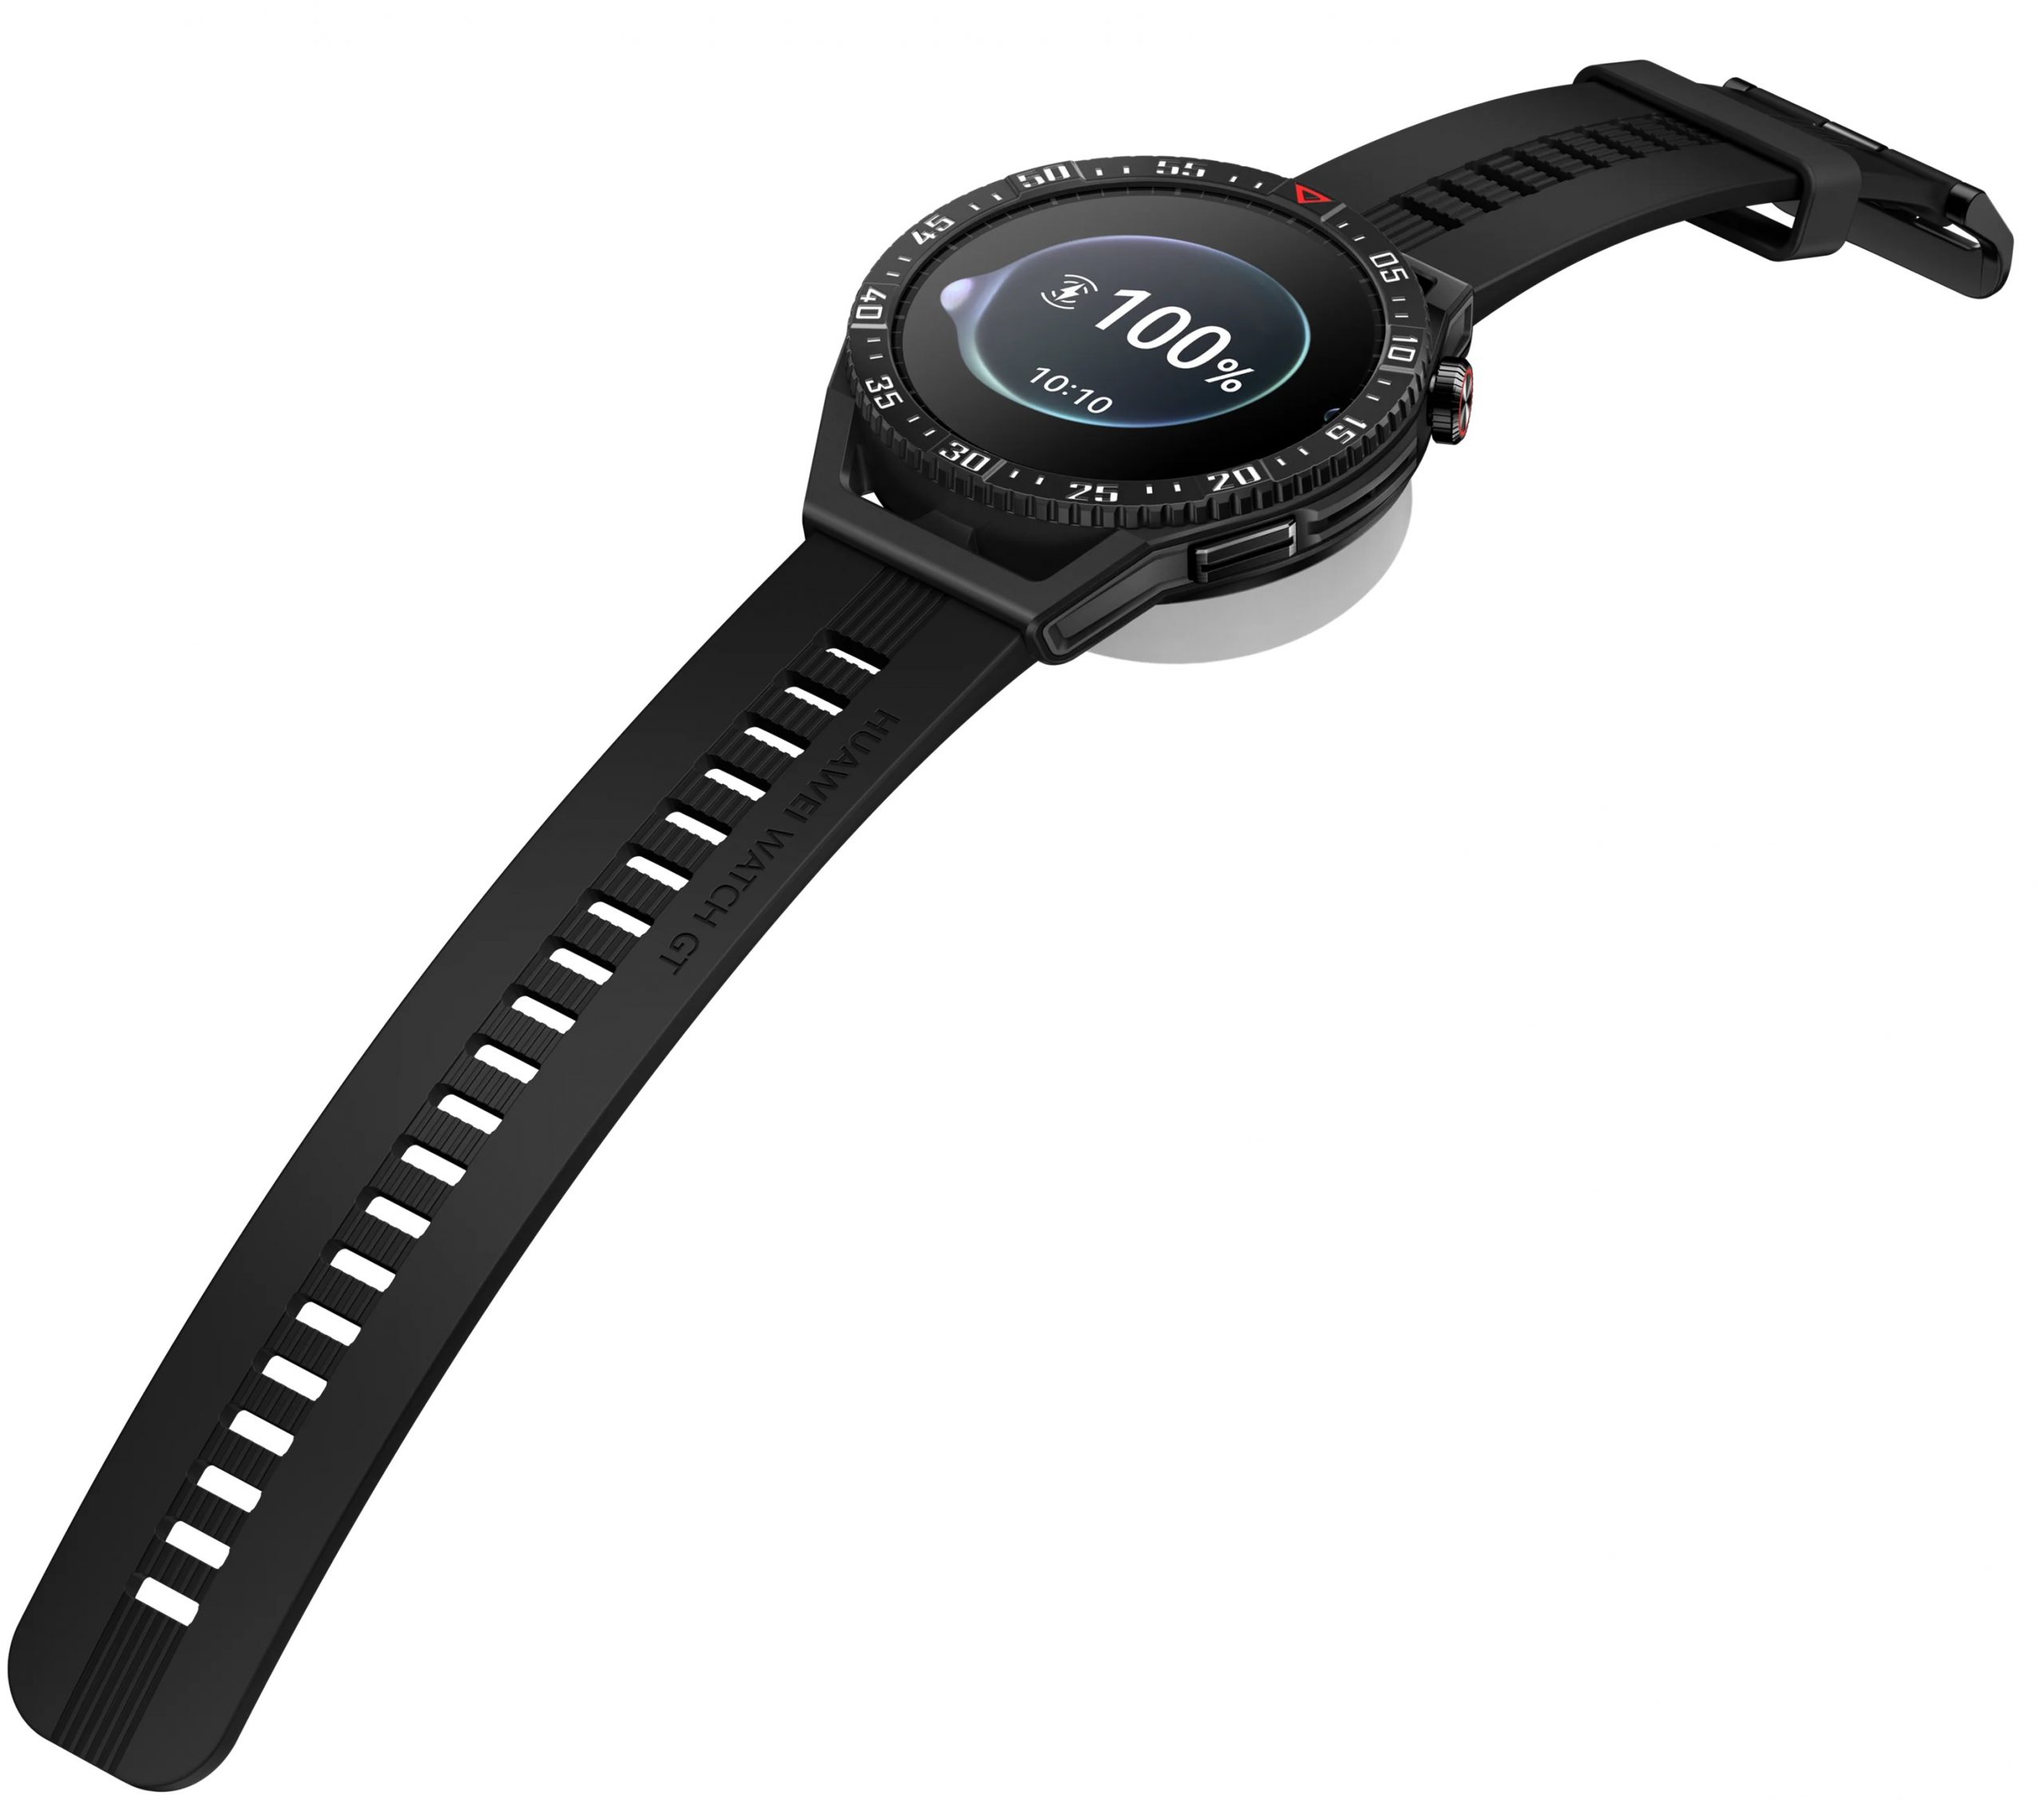 Huawei Watch GT 3 SE tukee langatonta latausta. Mukana toimitetaan latauslaite.